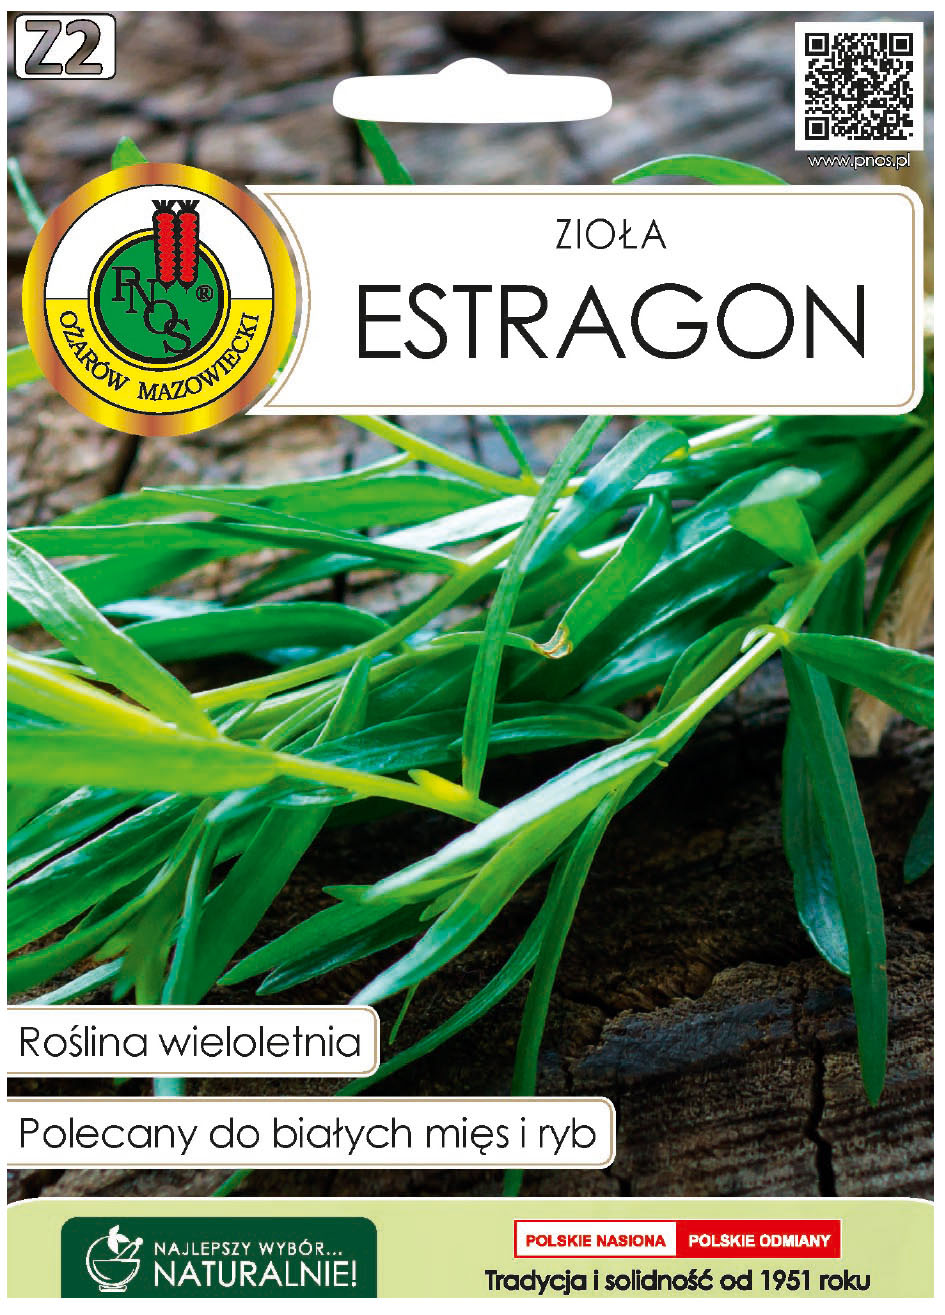 Estragon bylica draganek jest to wieloletnia bylina o częściowo zdrewniałej łodydze, lekko zwisających, wąskich, lancetowatych liściach.